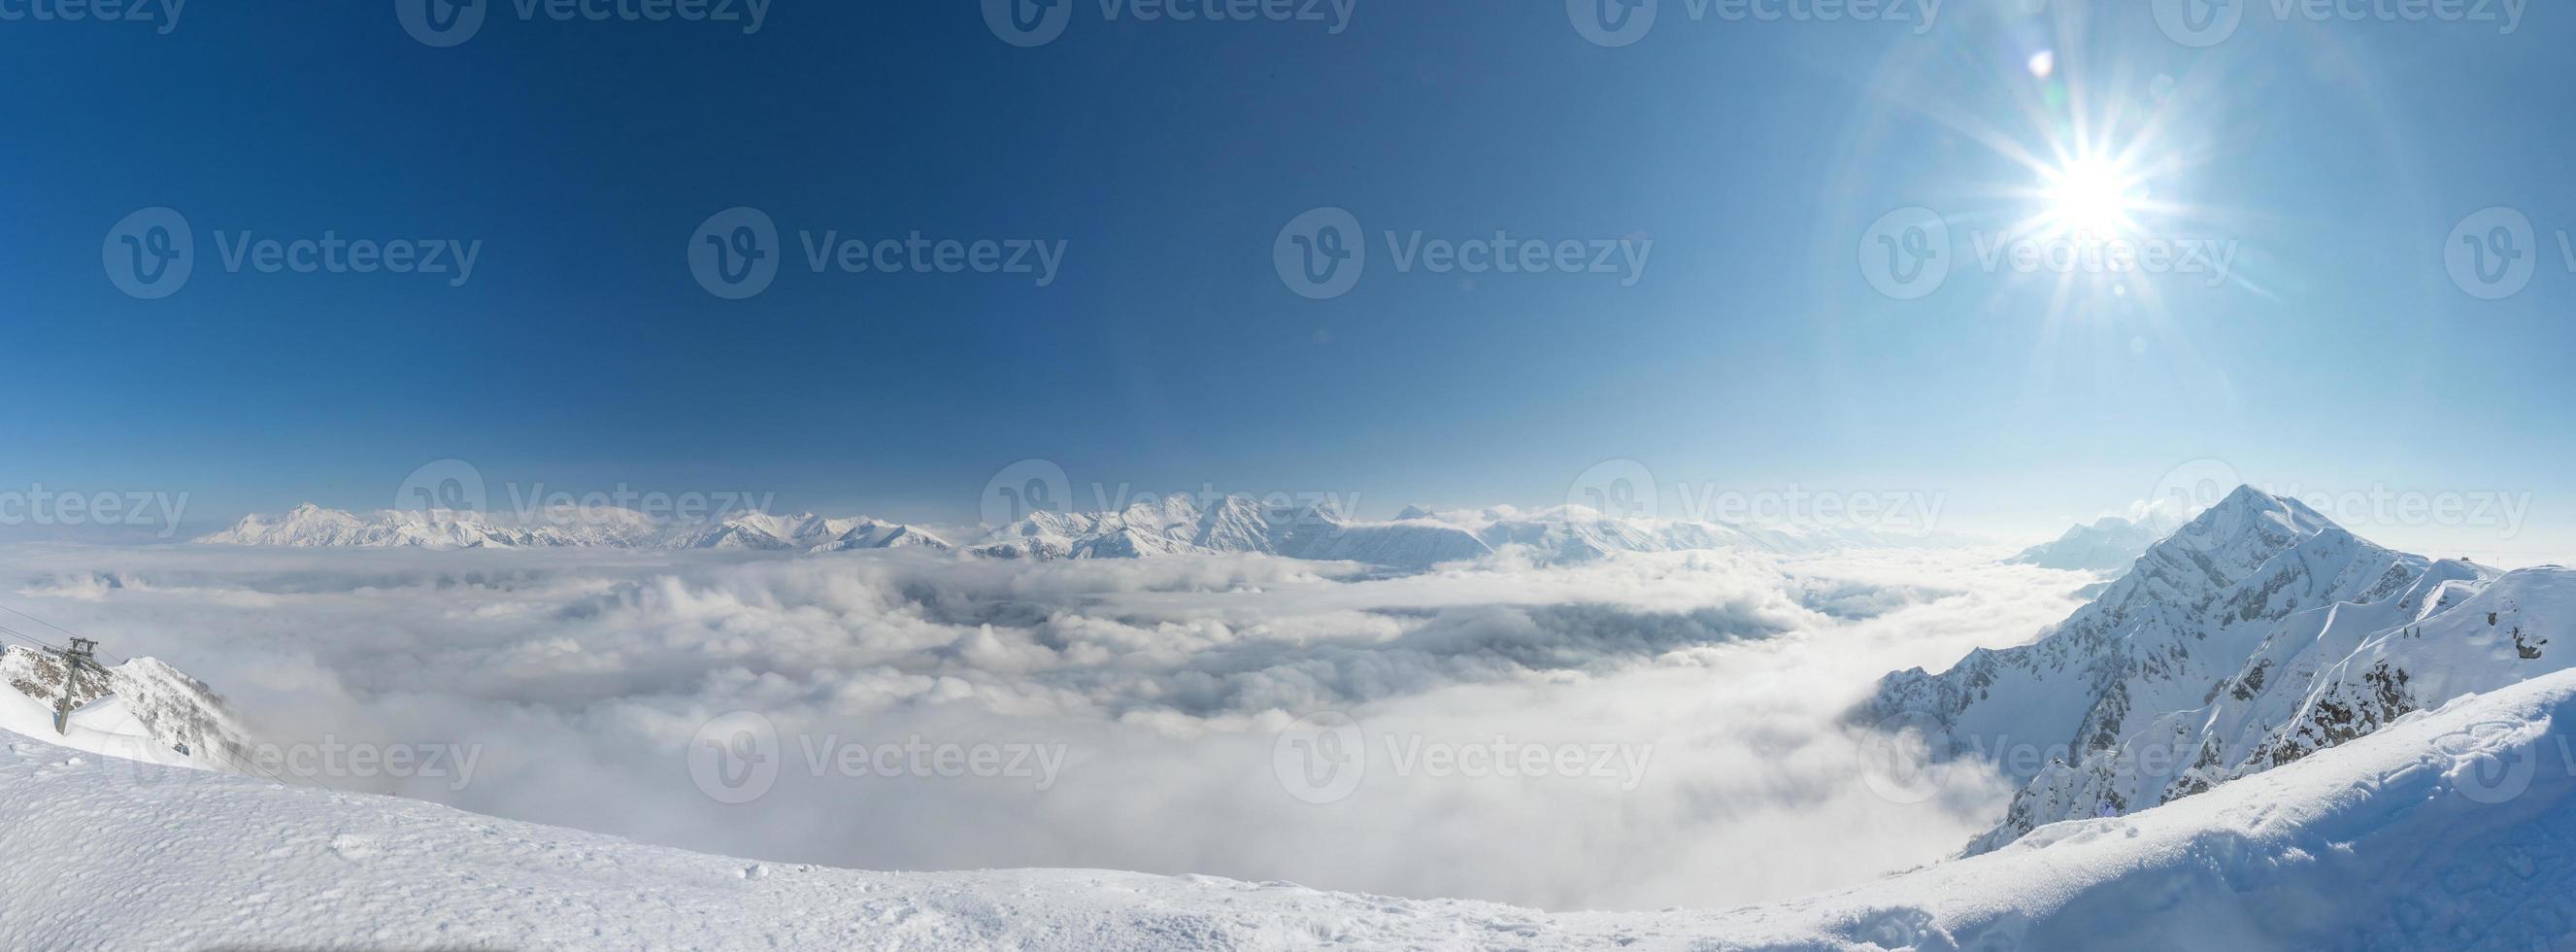 vue aérienne au-dessus des nuages. station de ski de rosa khutor, montagnes couvertes de neige à krasnaya polyana, russie. photo